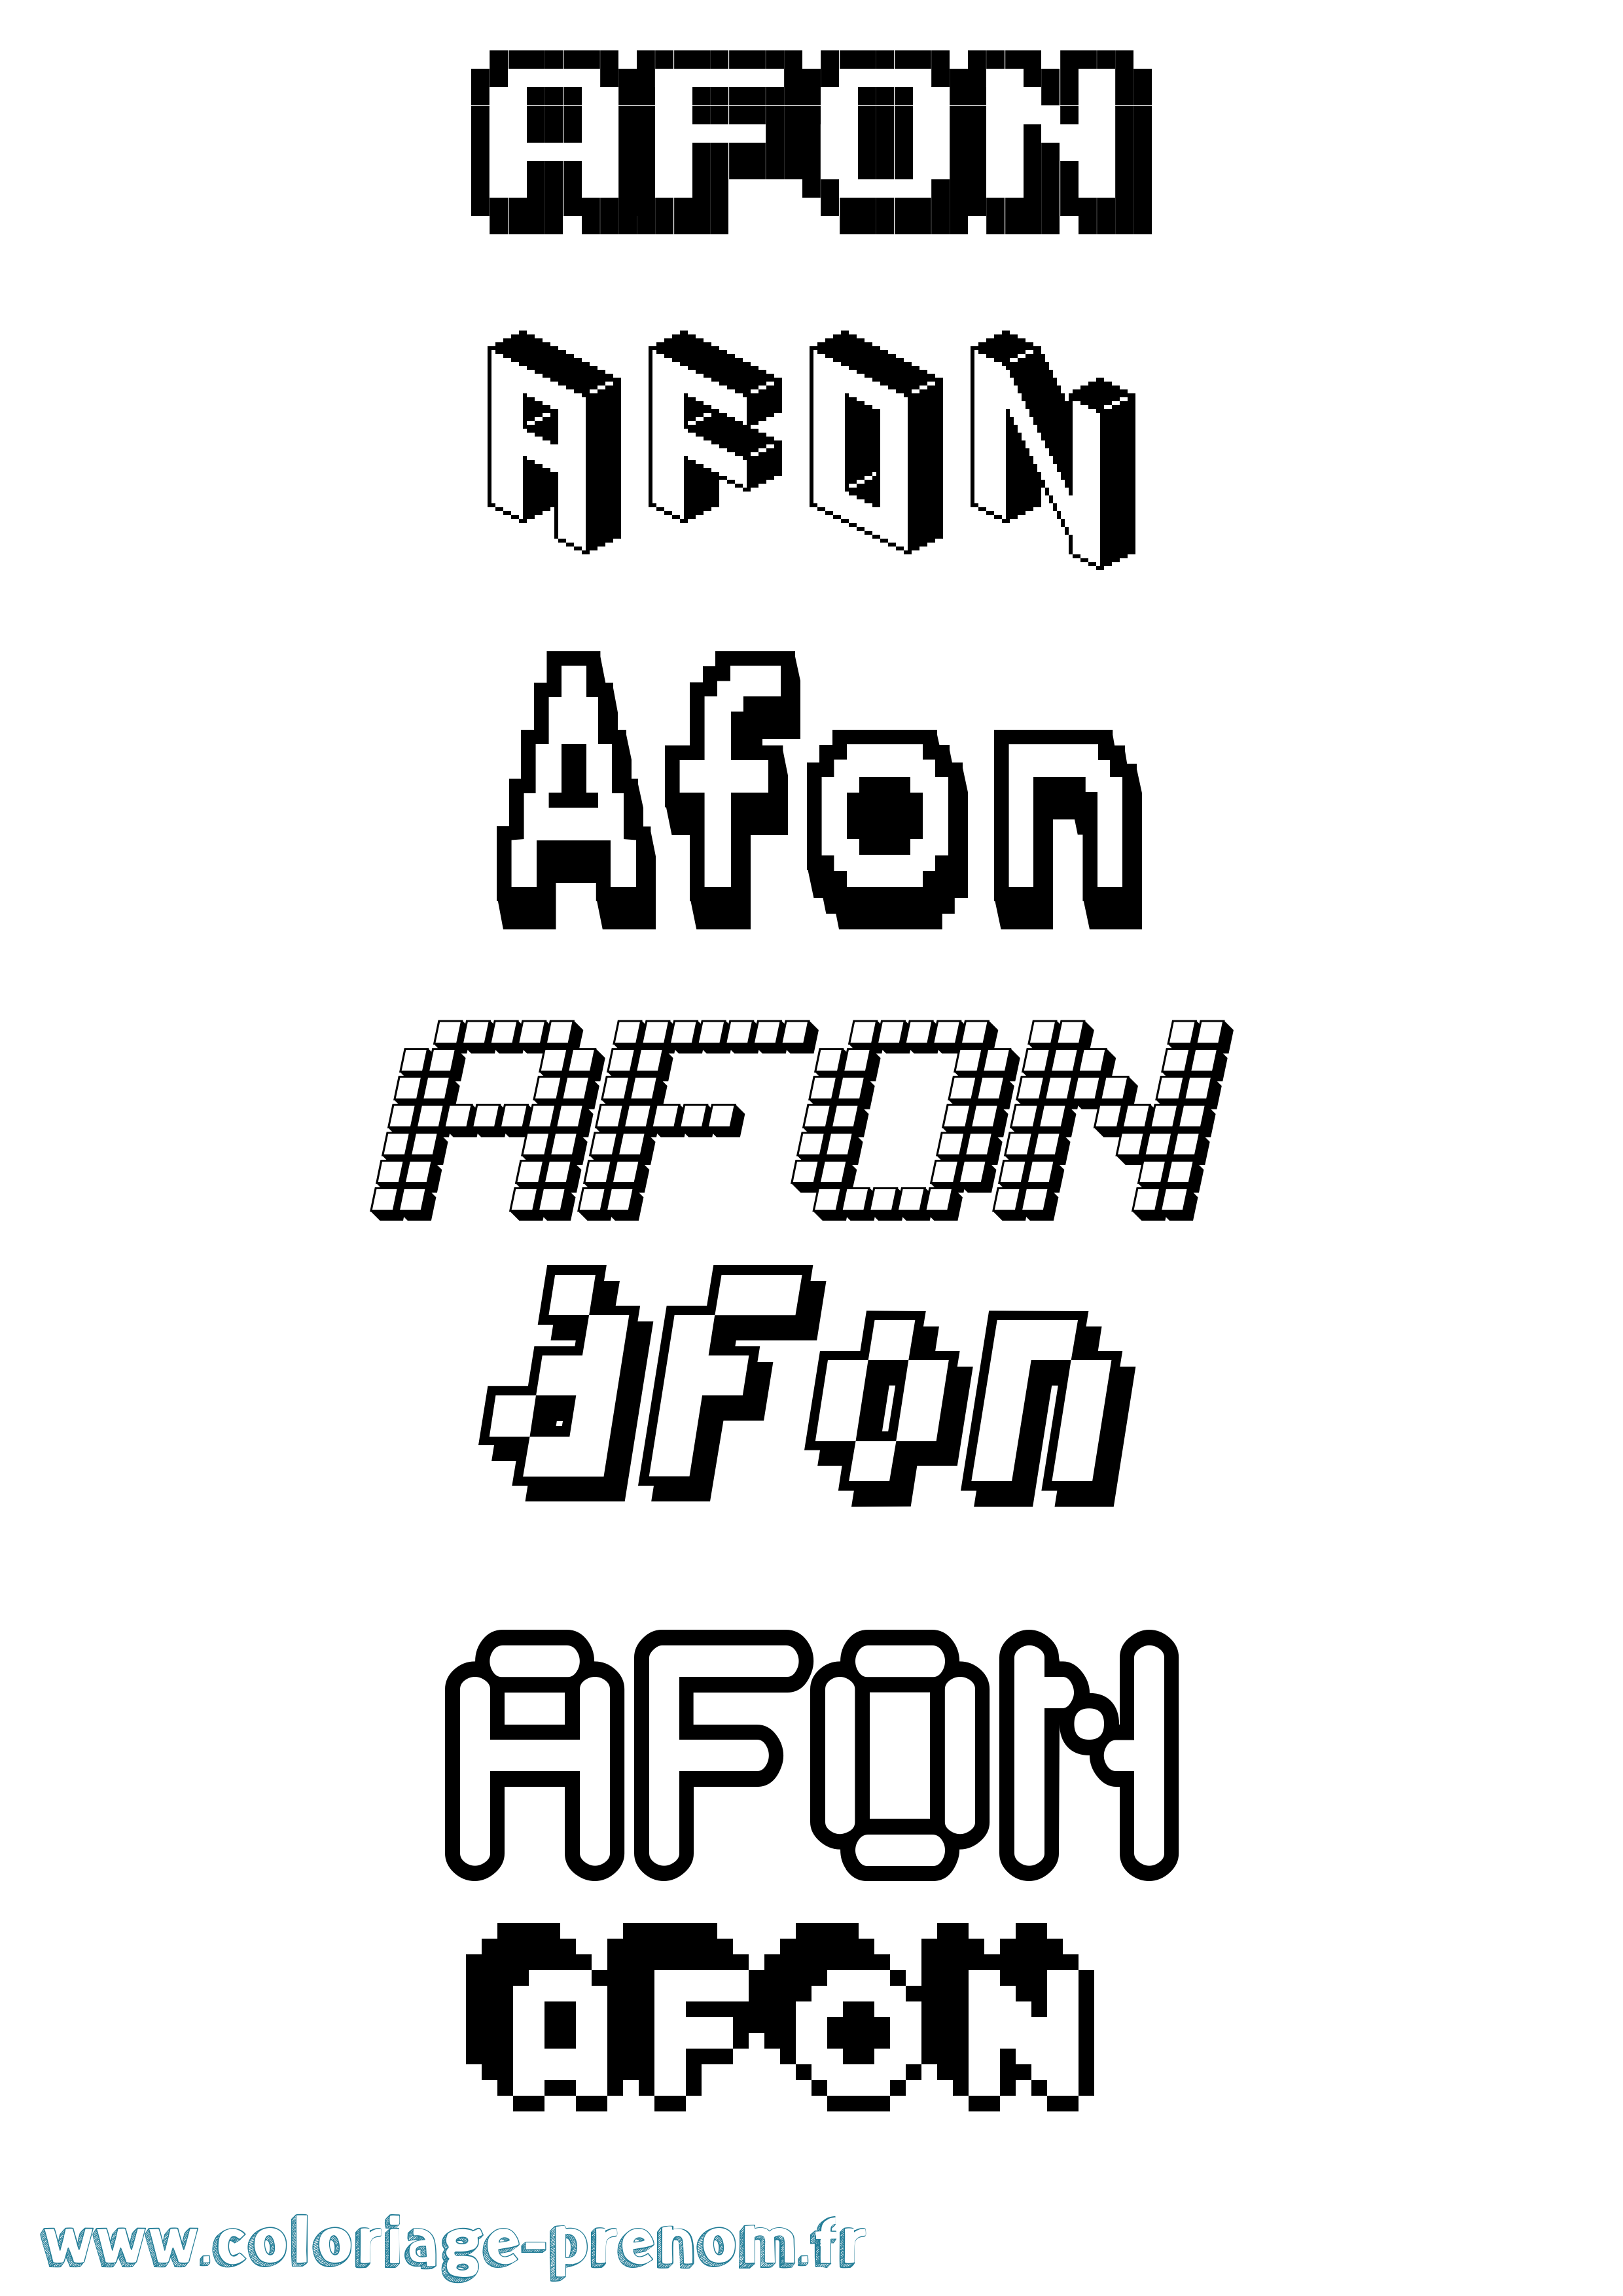 Coloriage prénom Afon Pixel